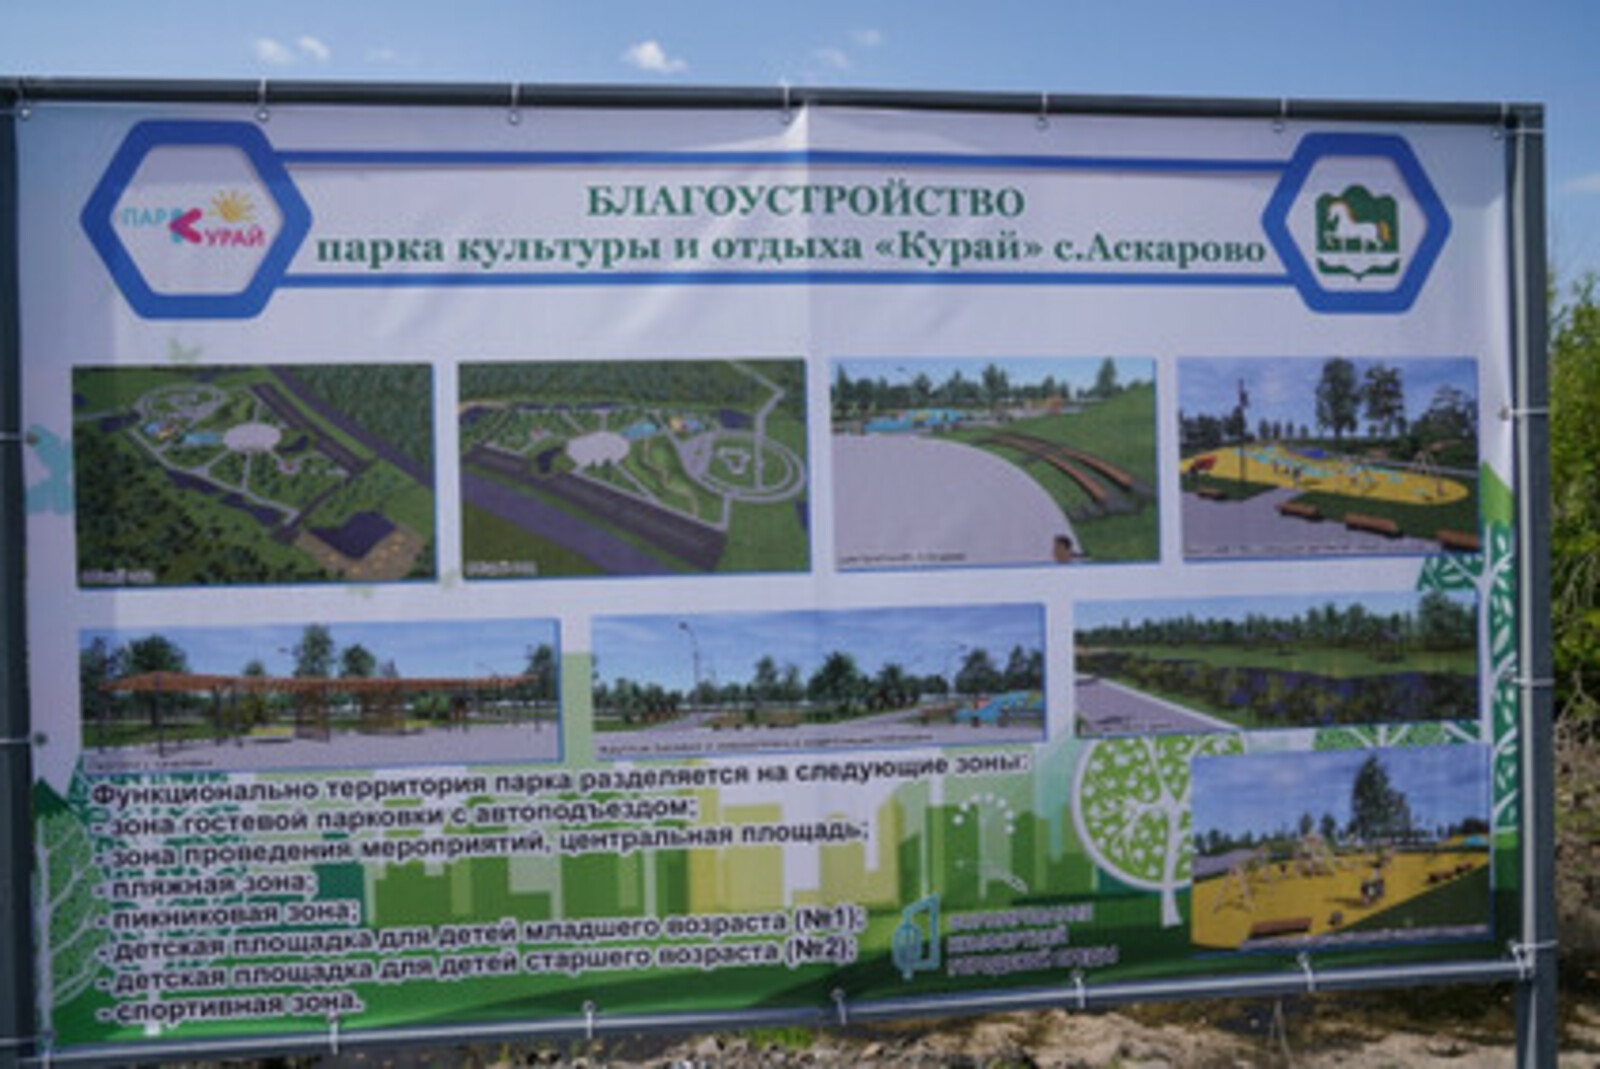 Парк культуры и отдыха «Курай» в Аскарово: на очереди – второй этап благоустройства